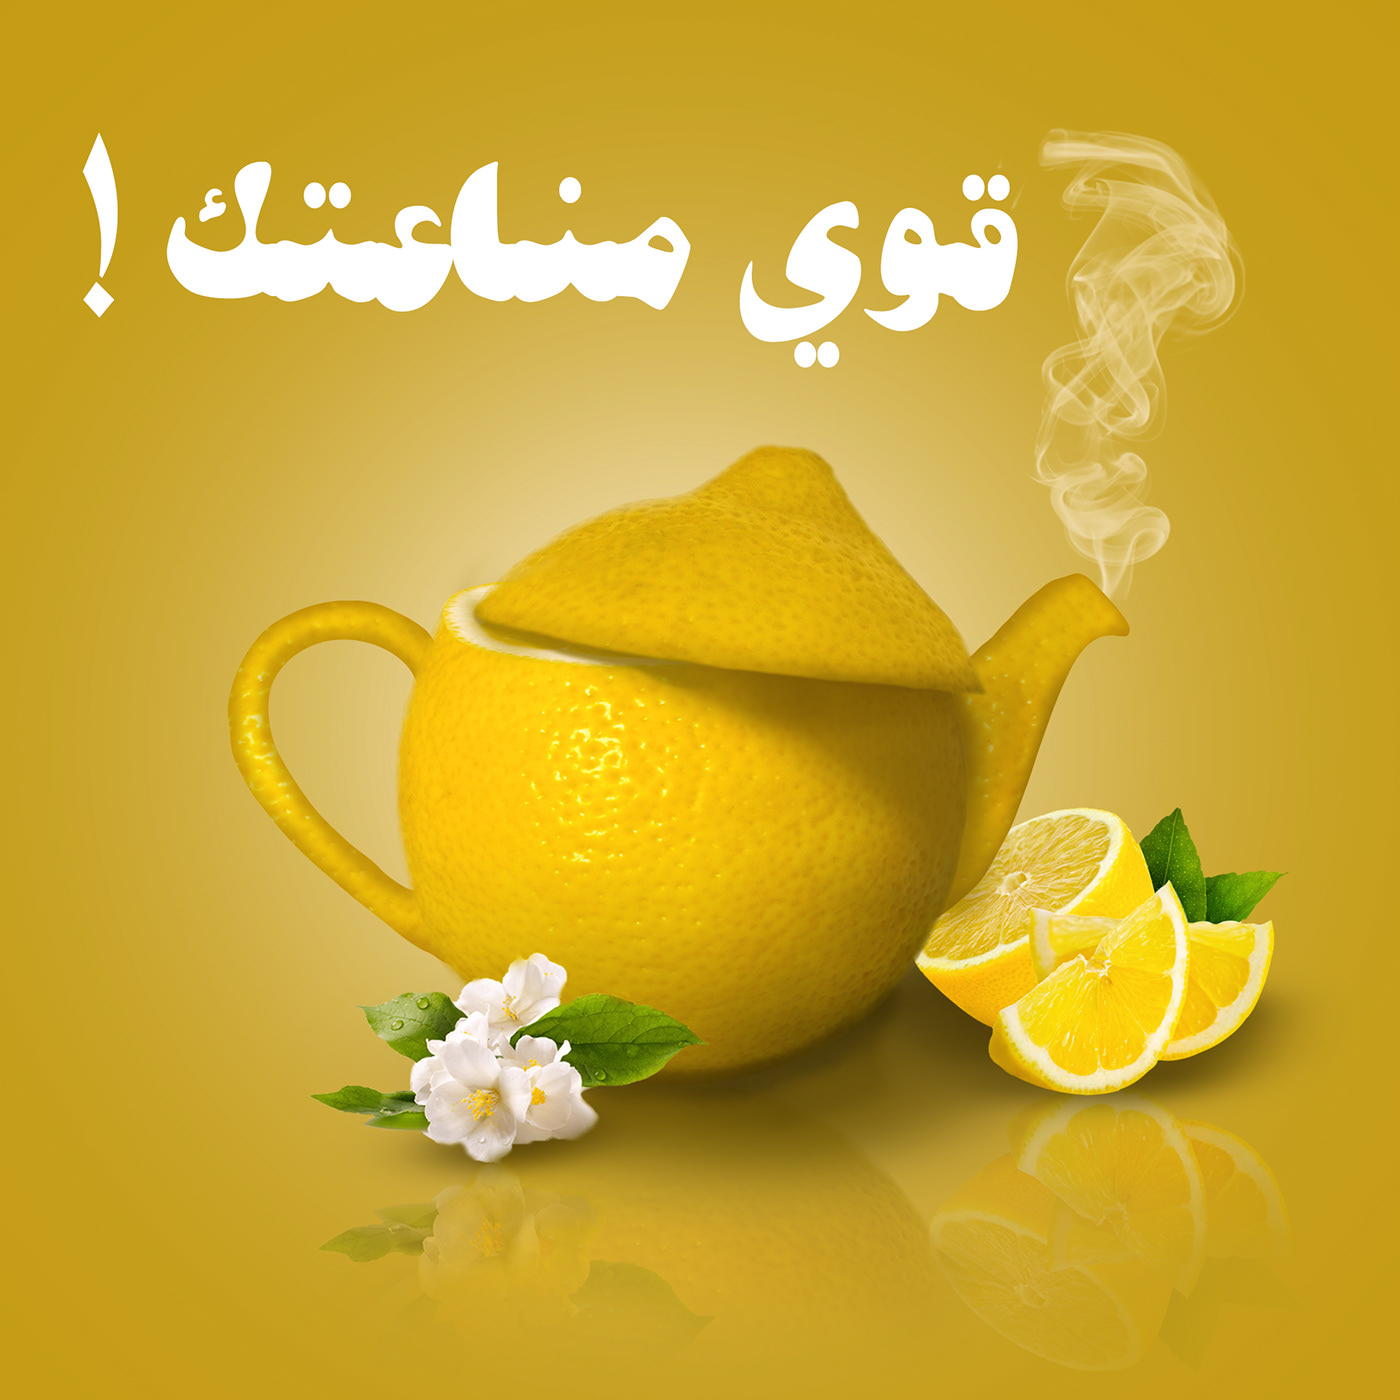 Advertising  citrus drink healthy food lemon